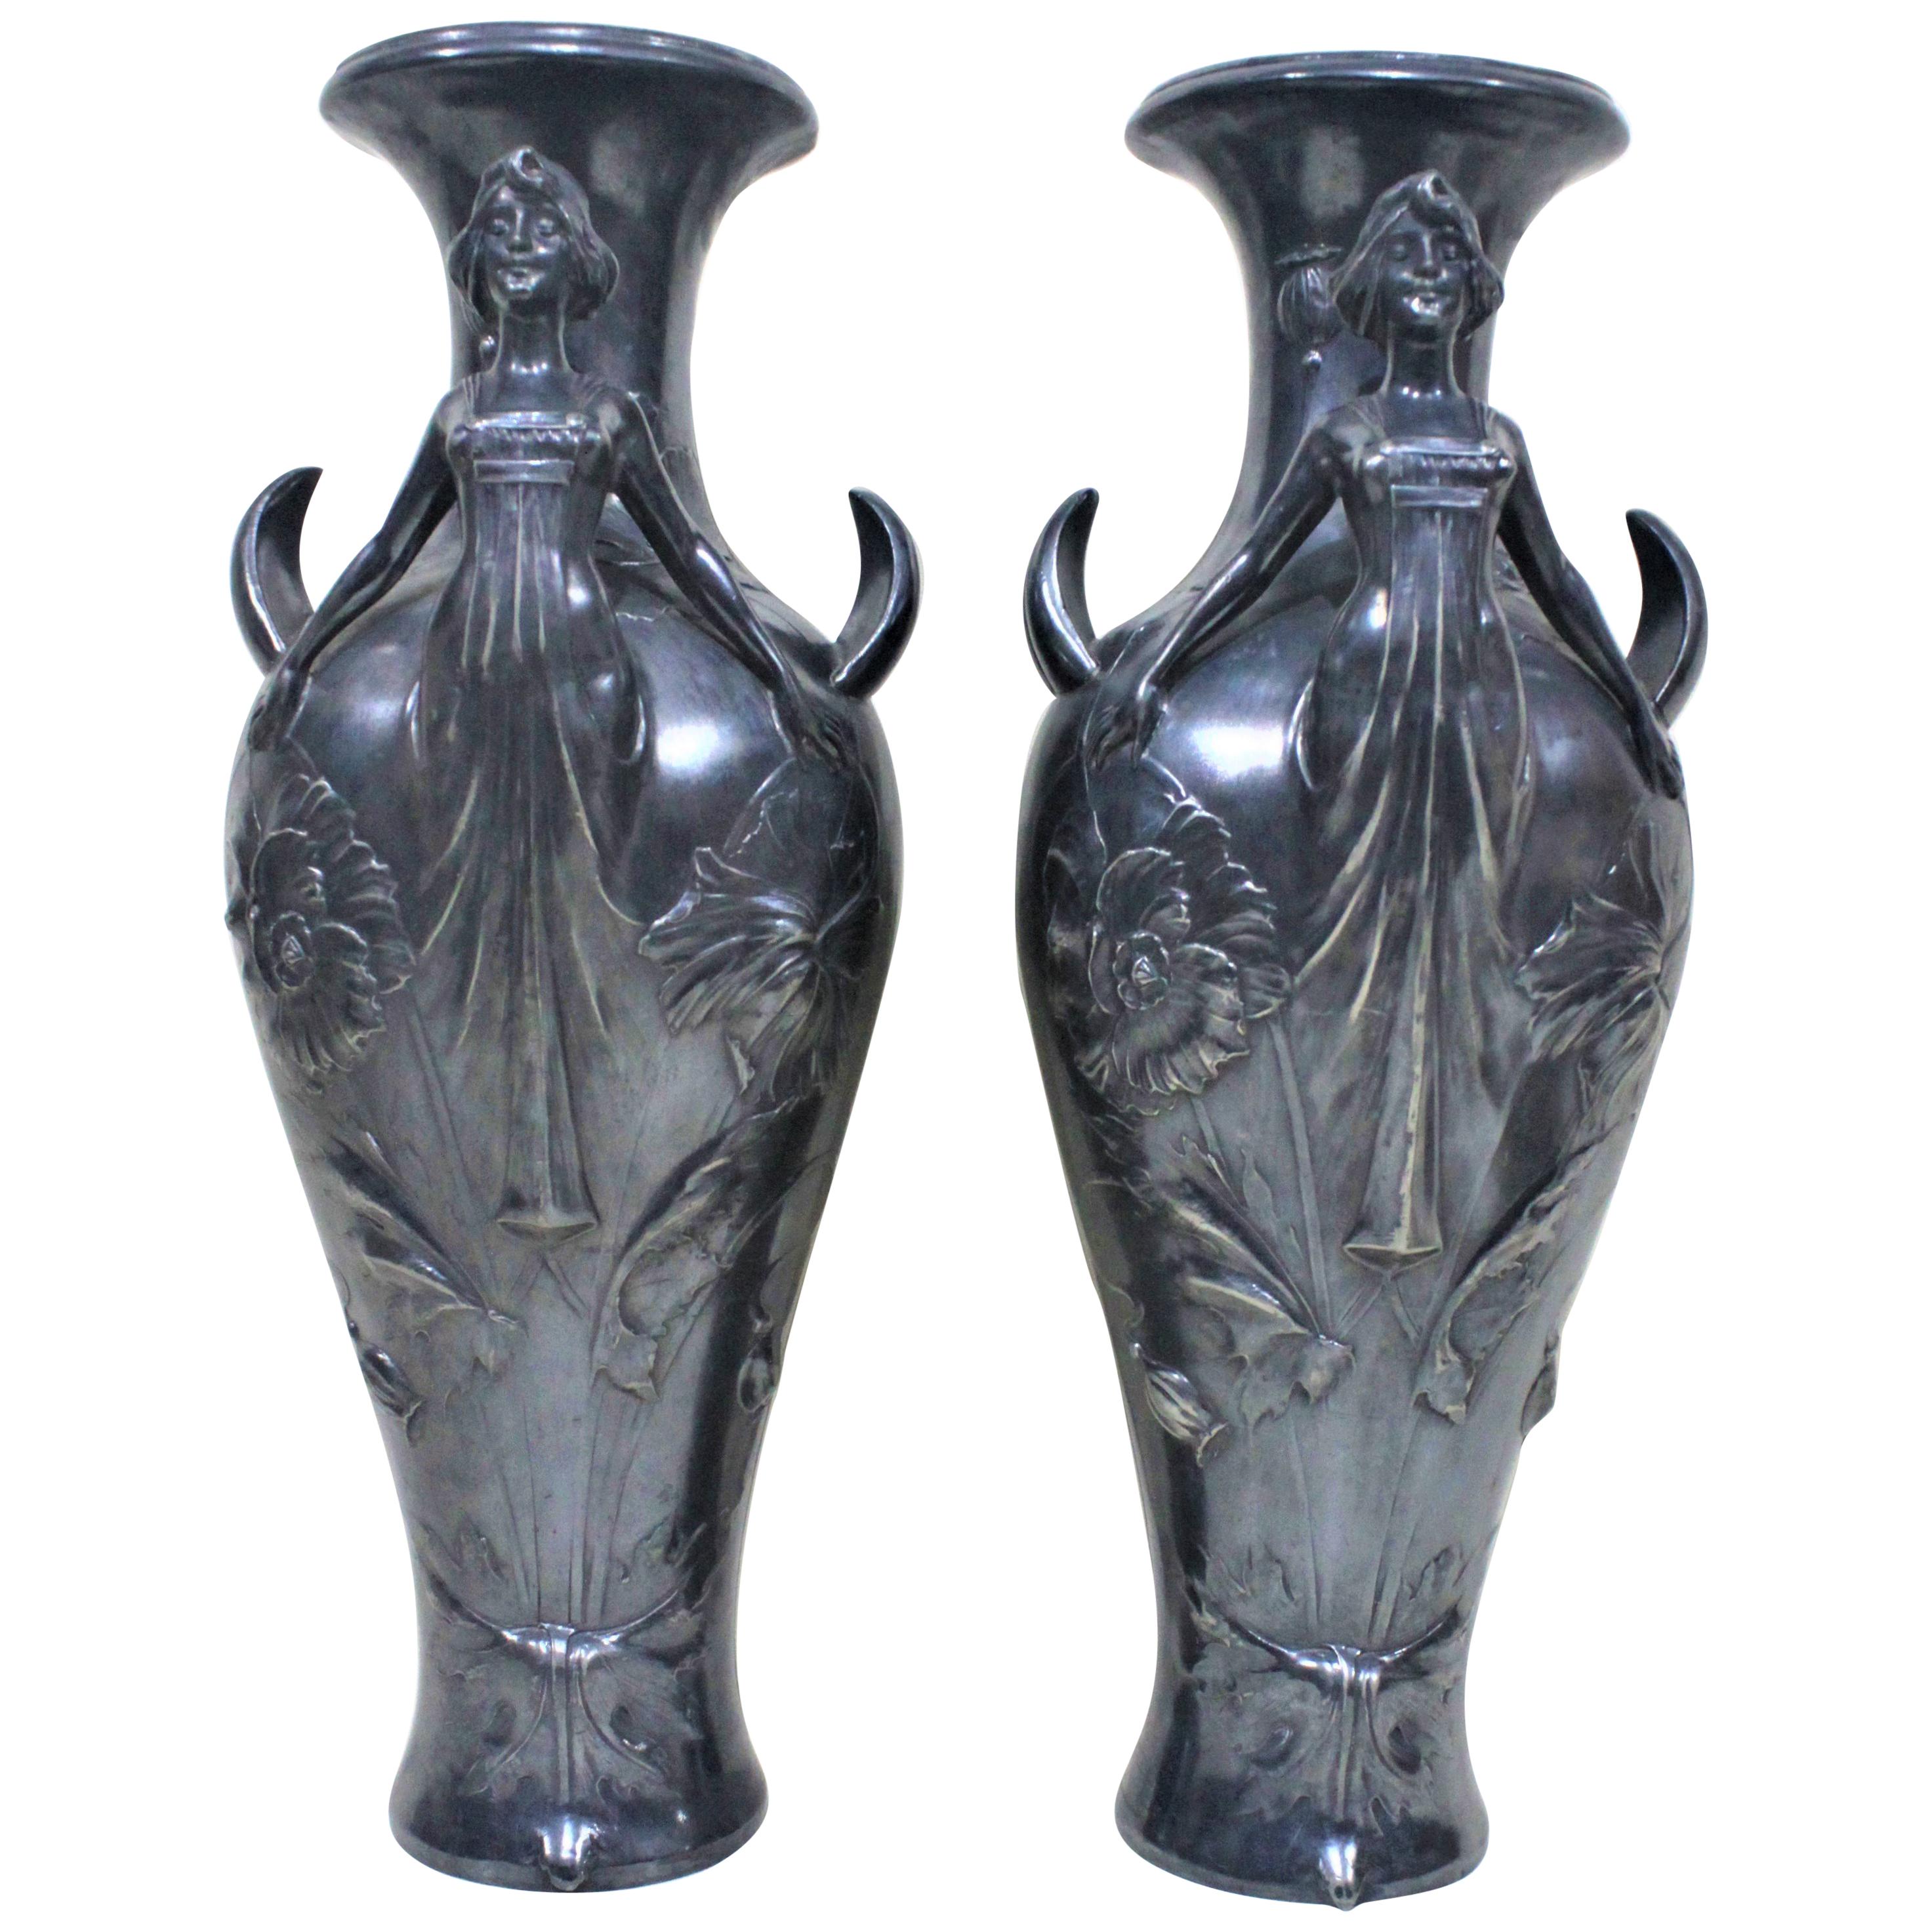 Paire de vases Art Nouveau en métal argenté avec figures féminines stylisées